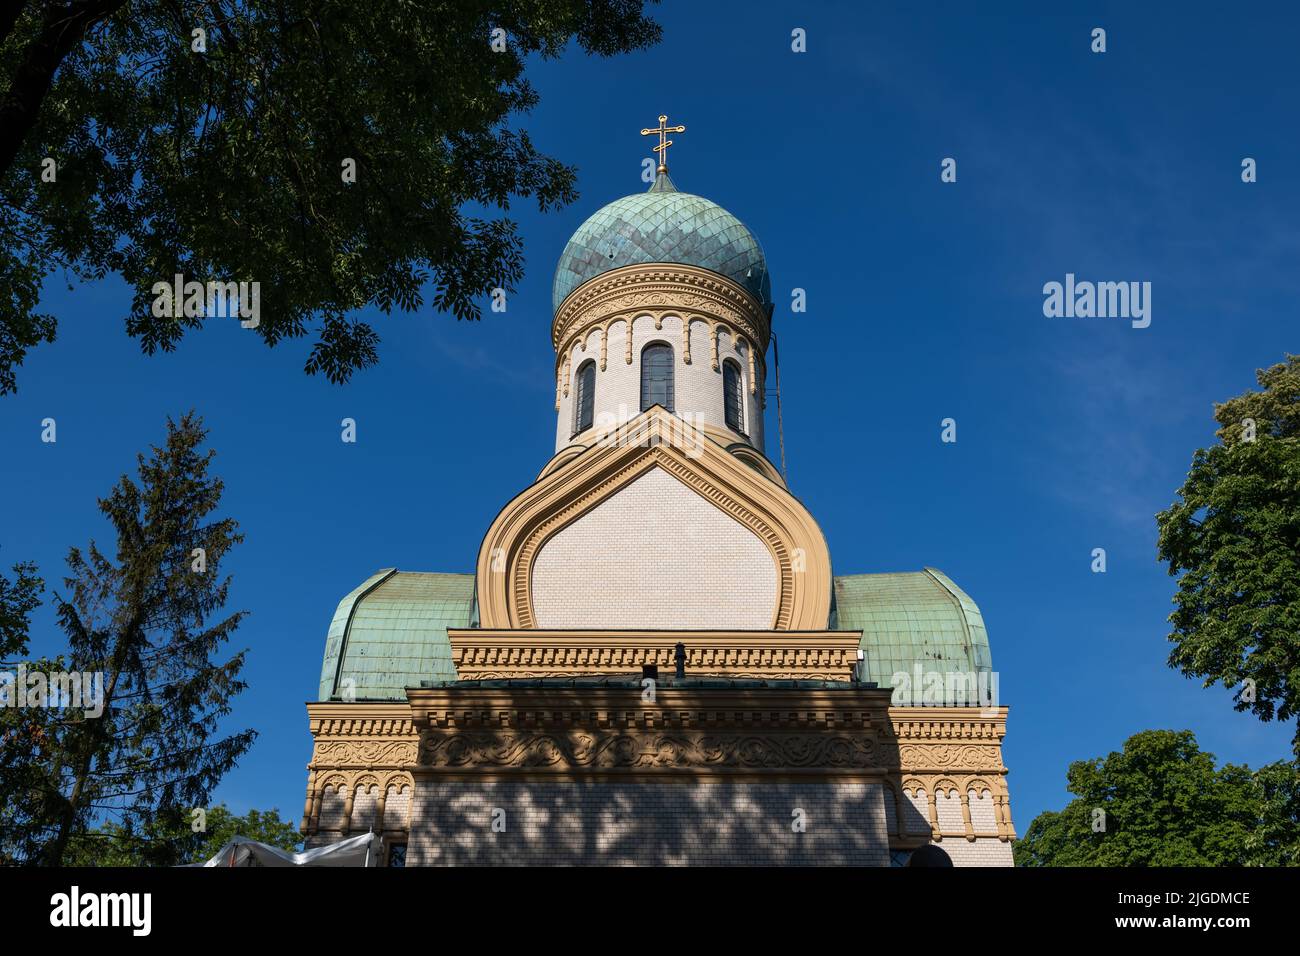 L'église orthodoxe Saint-Jean Climacus (en polonais : Cerkiew św. Jana Klimaka) dans le quartier de Wola de Varsovie en Pologne. Banque D'Images